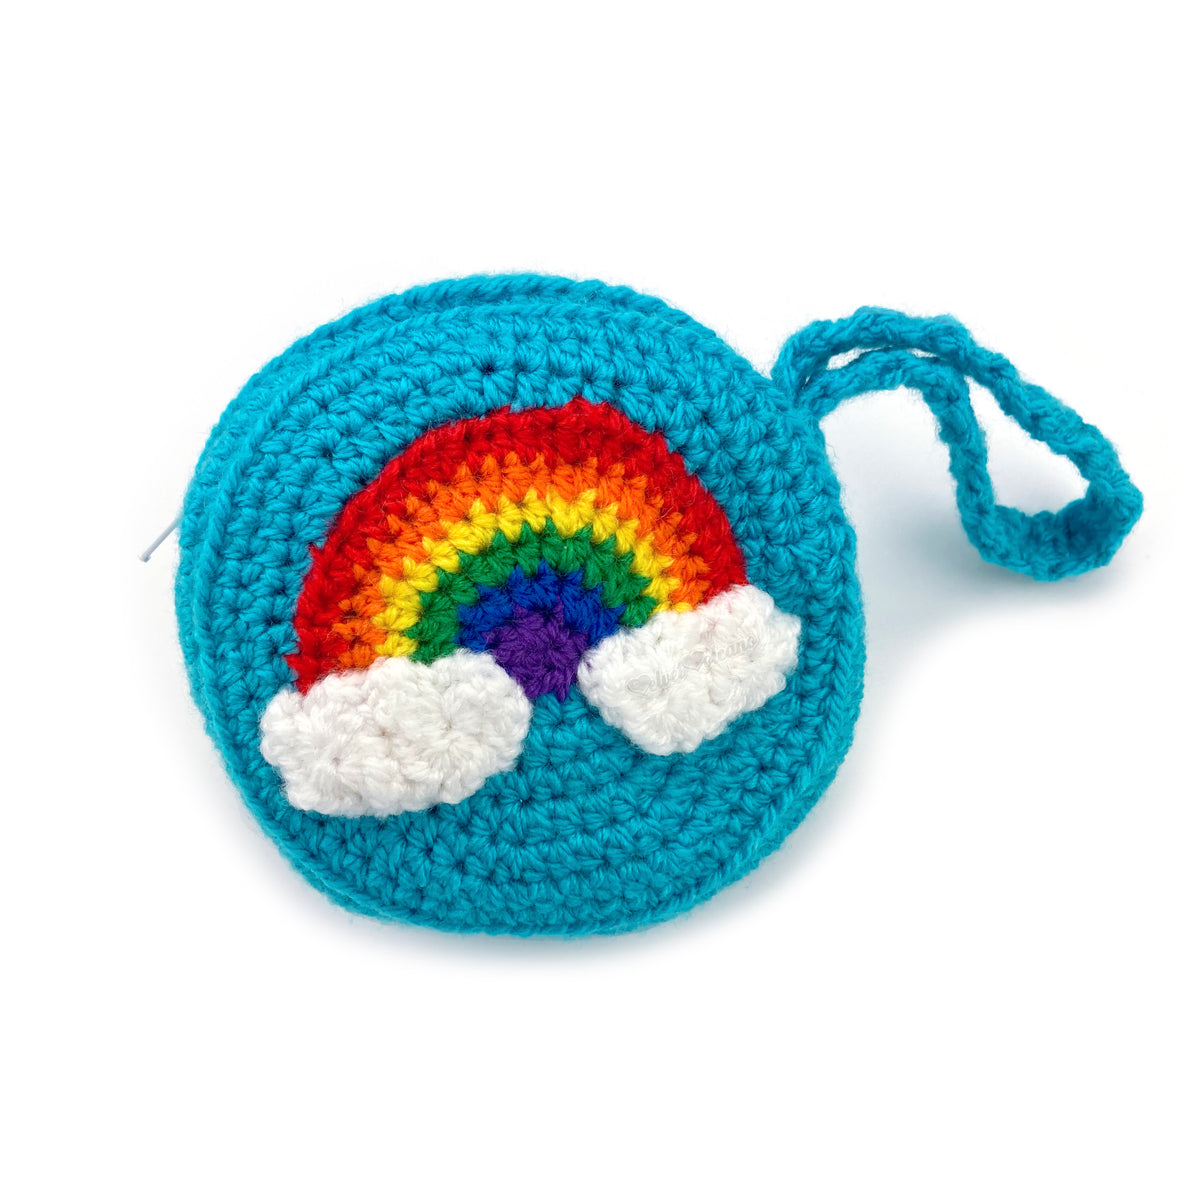 Bright Rainbow Cloud Coin Purse - Kawaii Crochet Circular Change Pouch ...